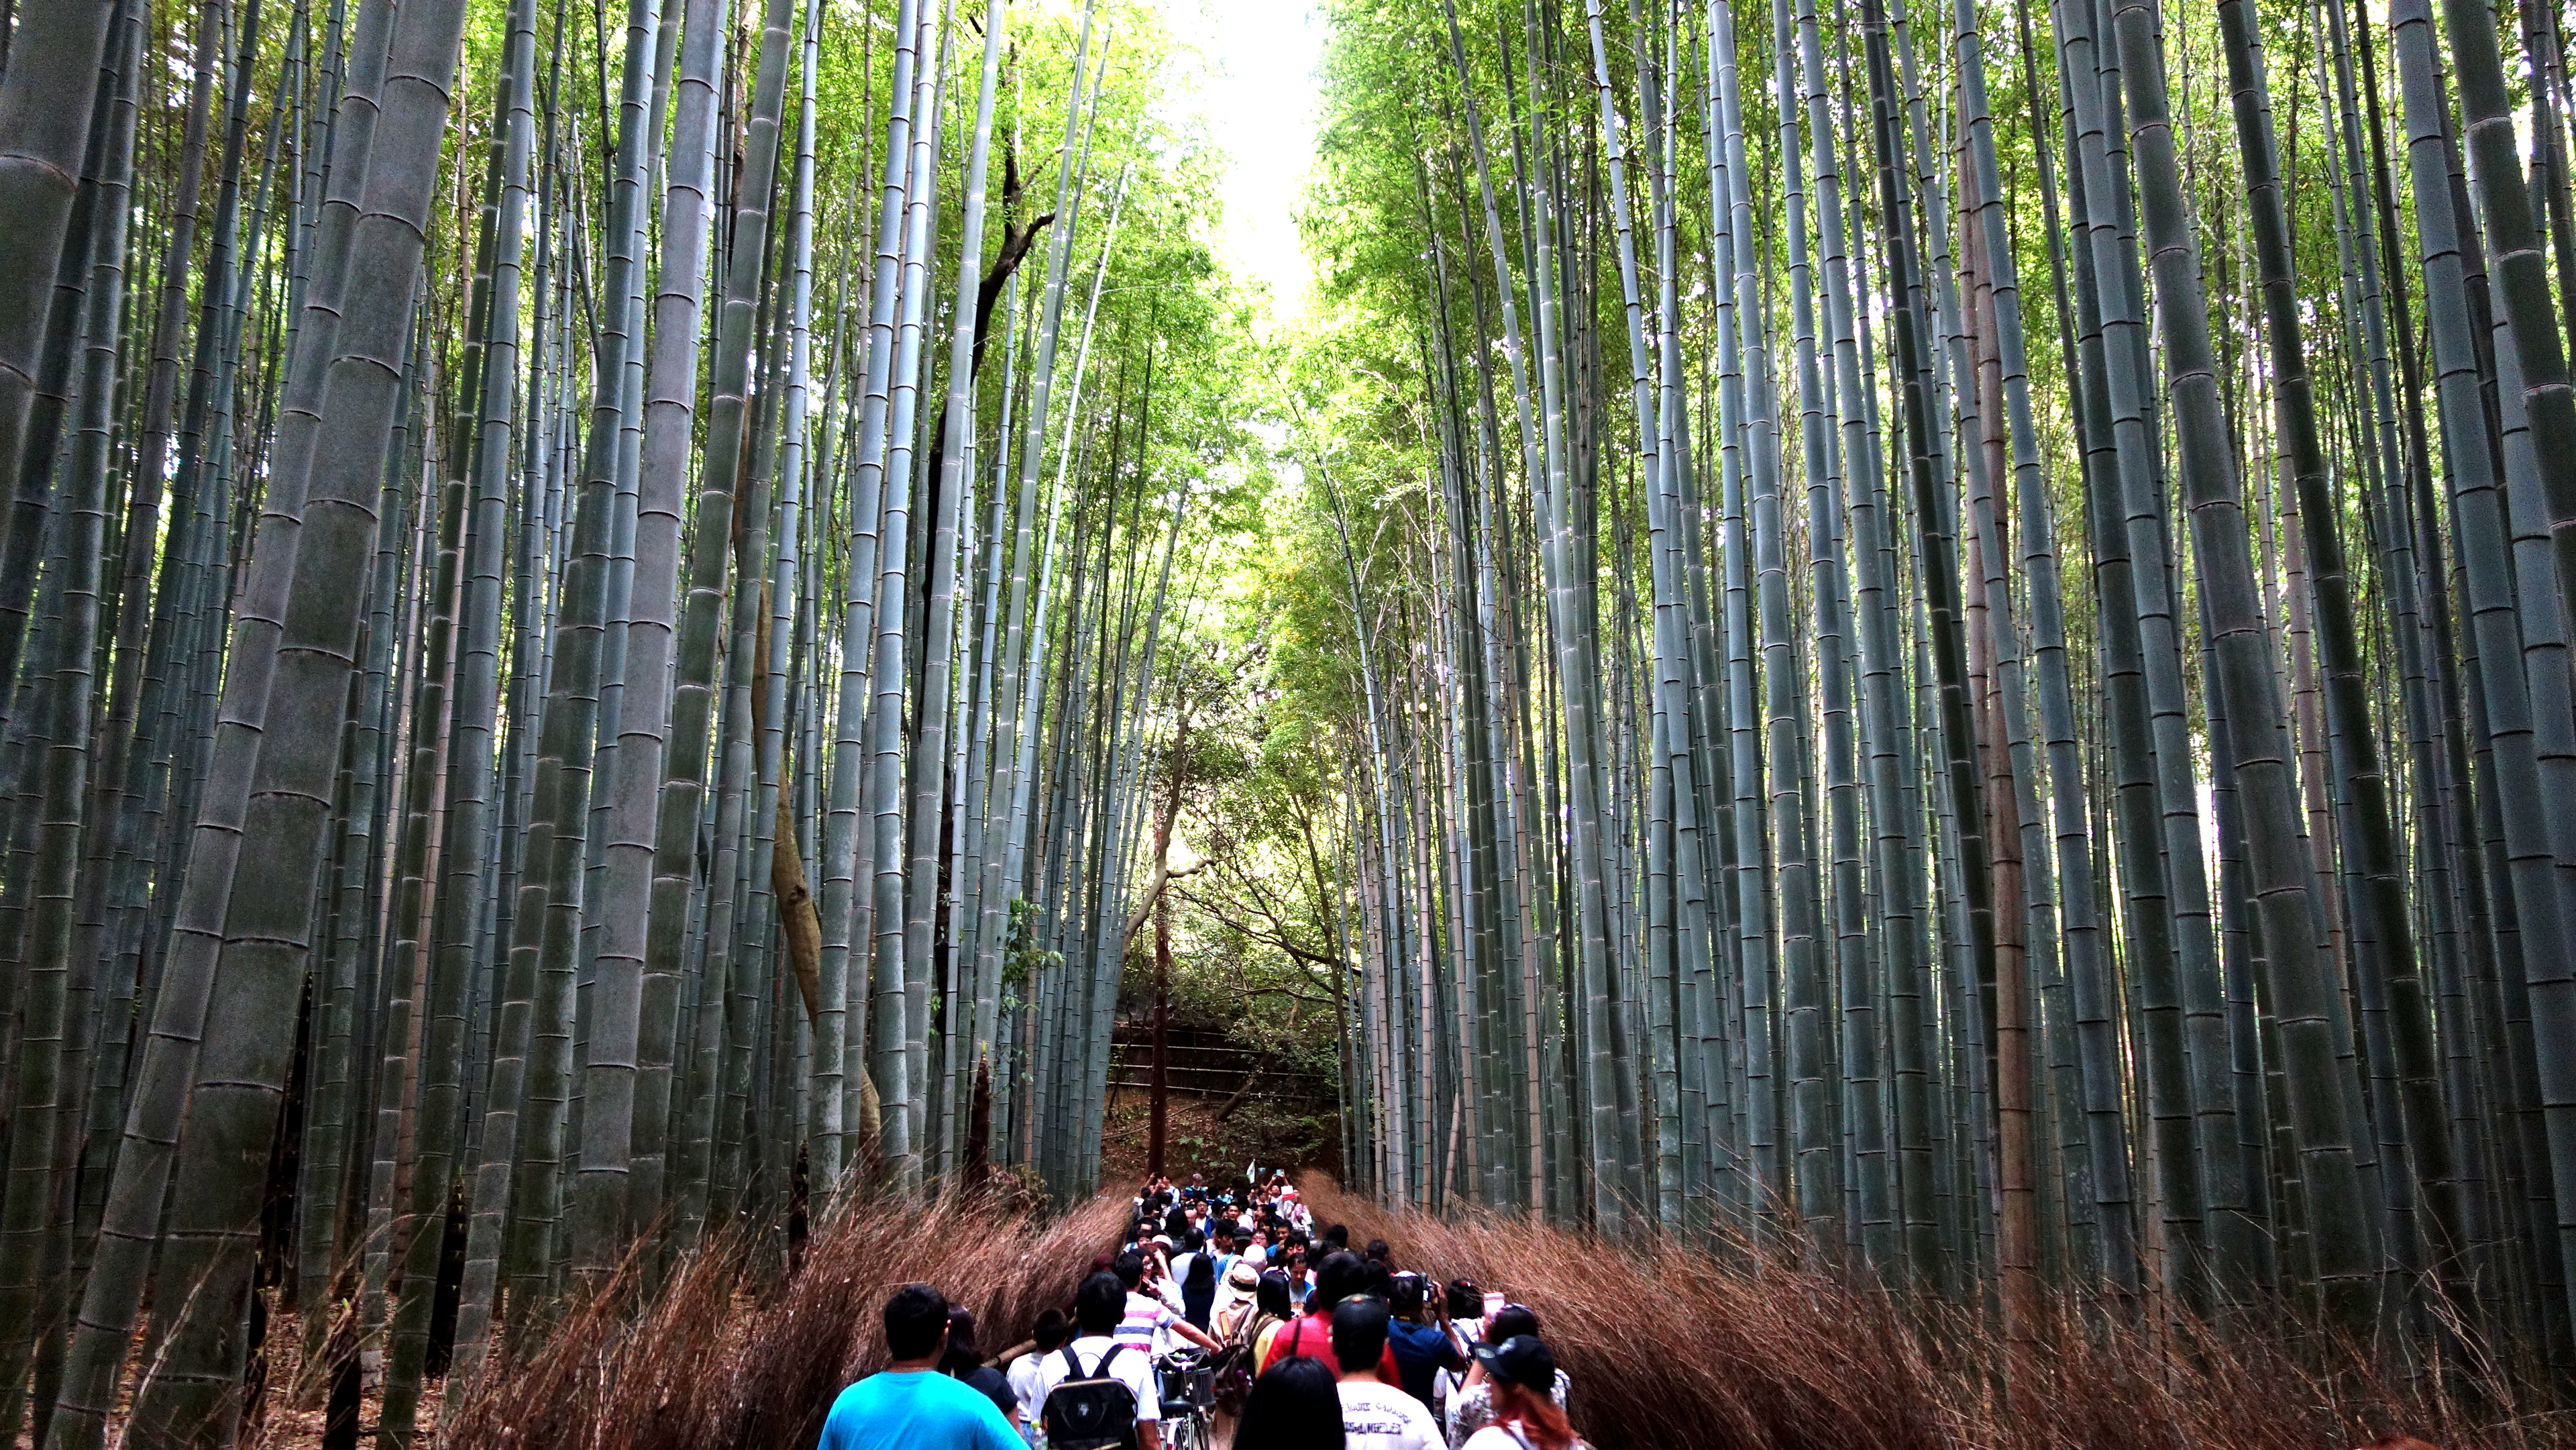 20170506 121514 arashiyama bamboo